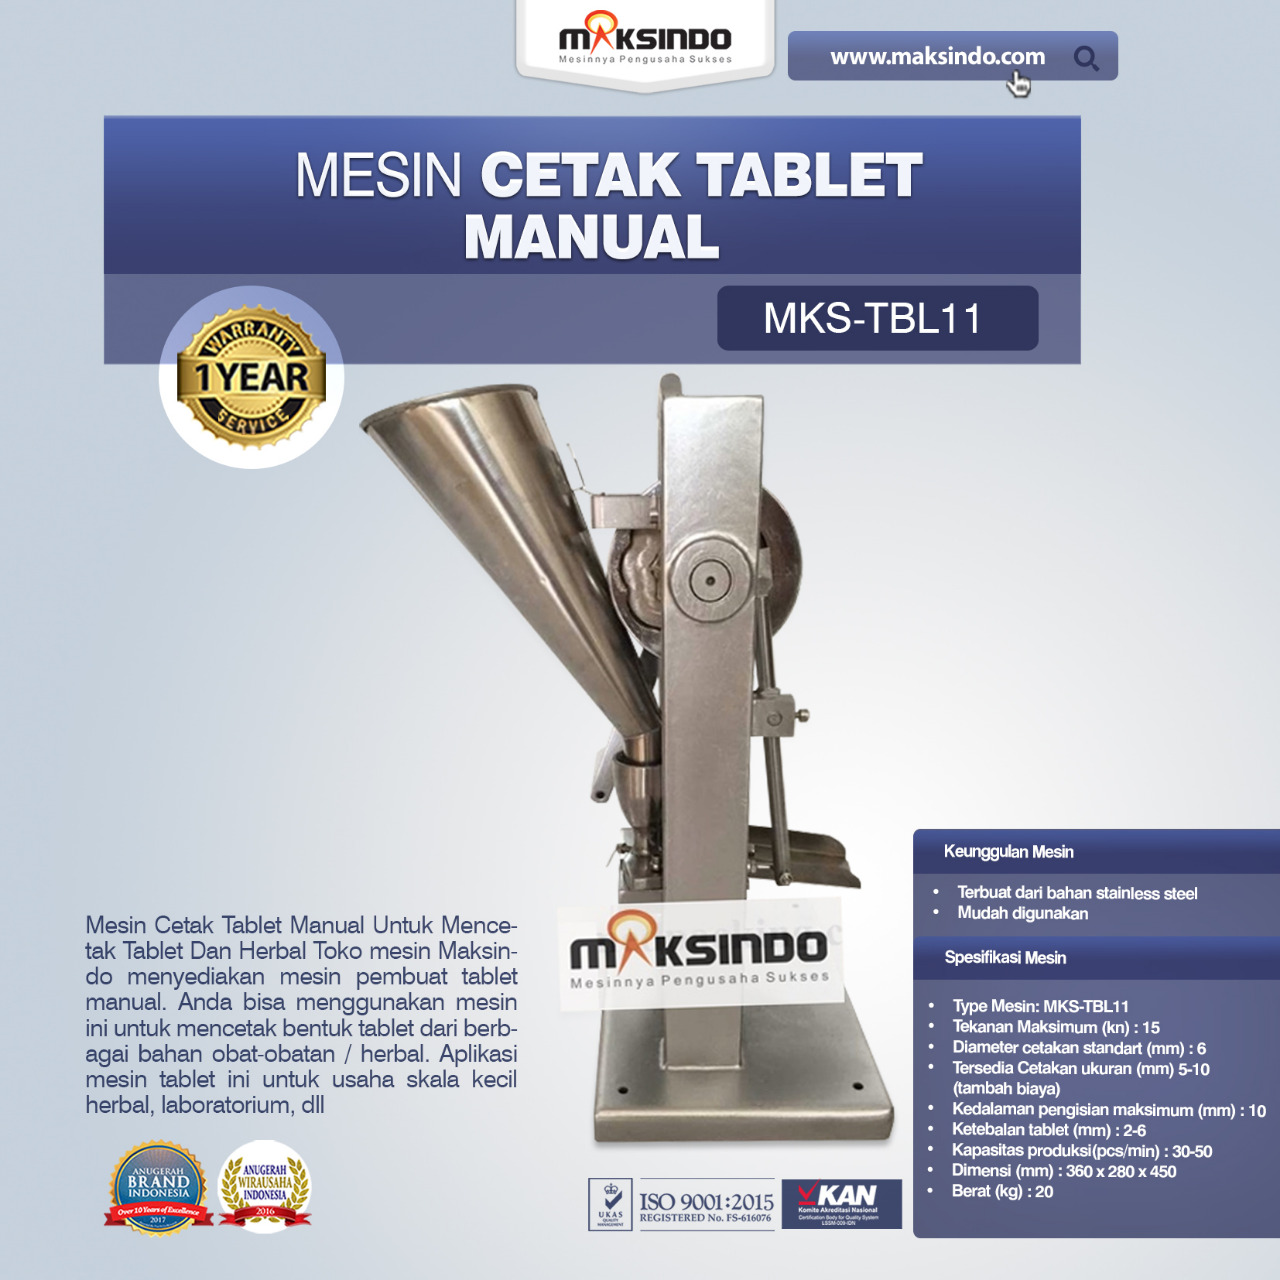 Jual Mesin Cetak Tablet Manual – MKS-TBL11 di Medan